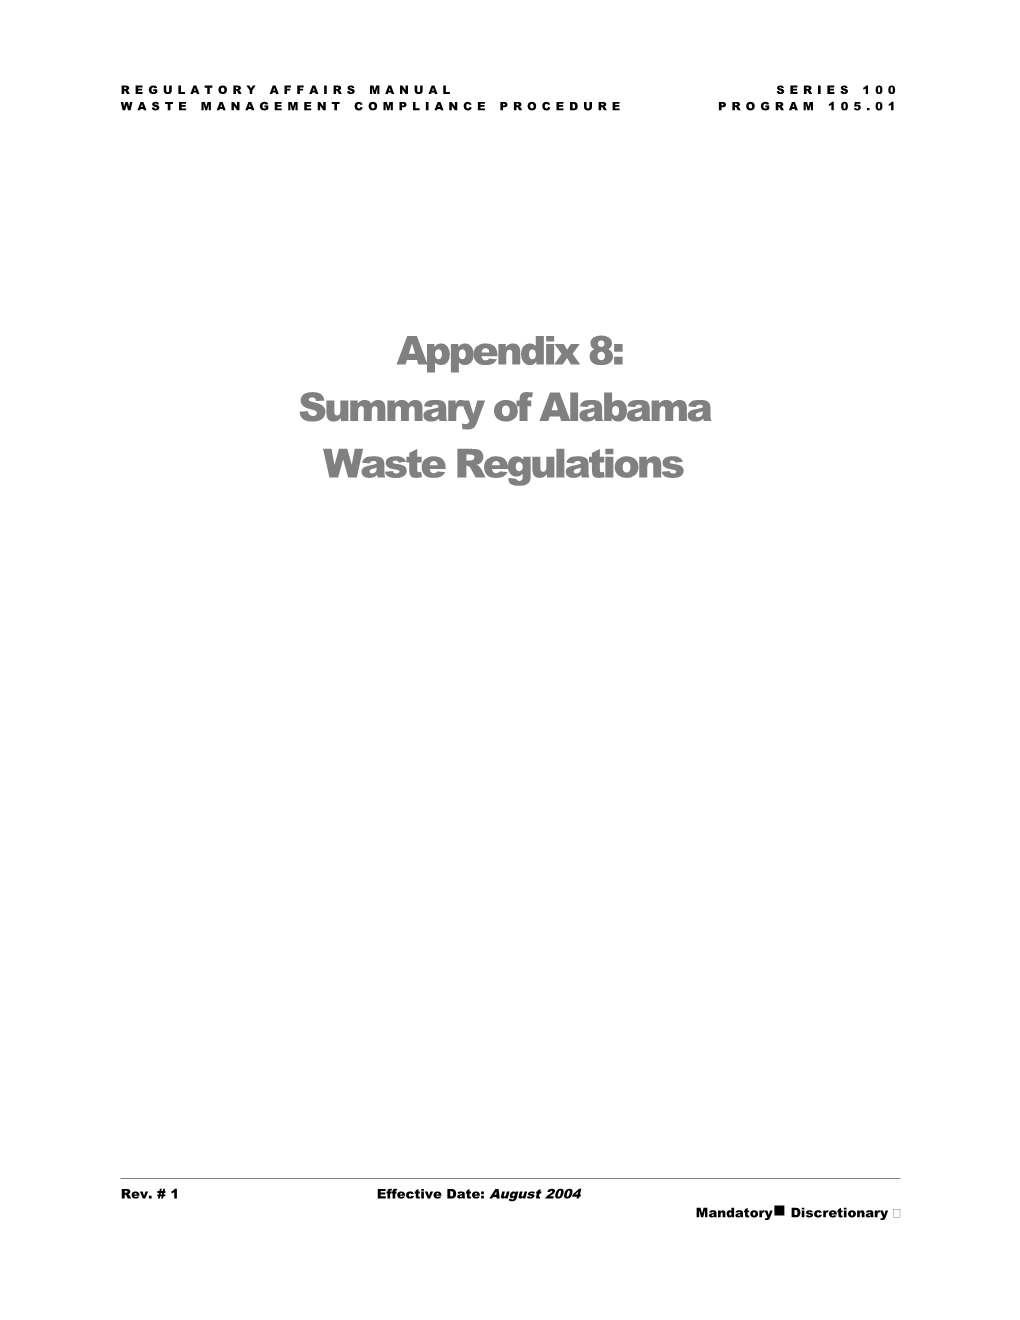 Waste Management Compliance Procedureprogram 105.01